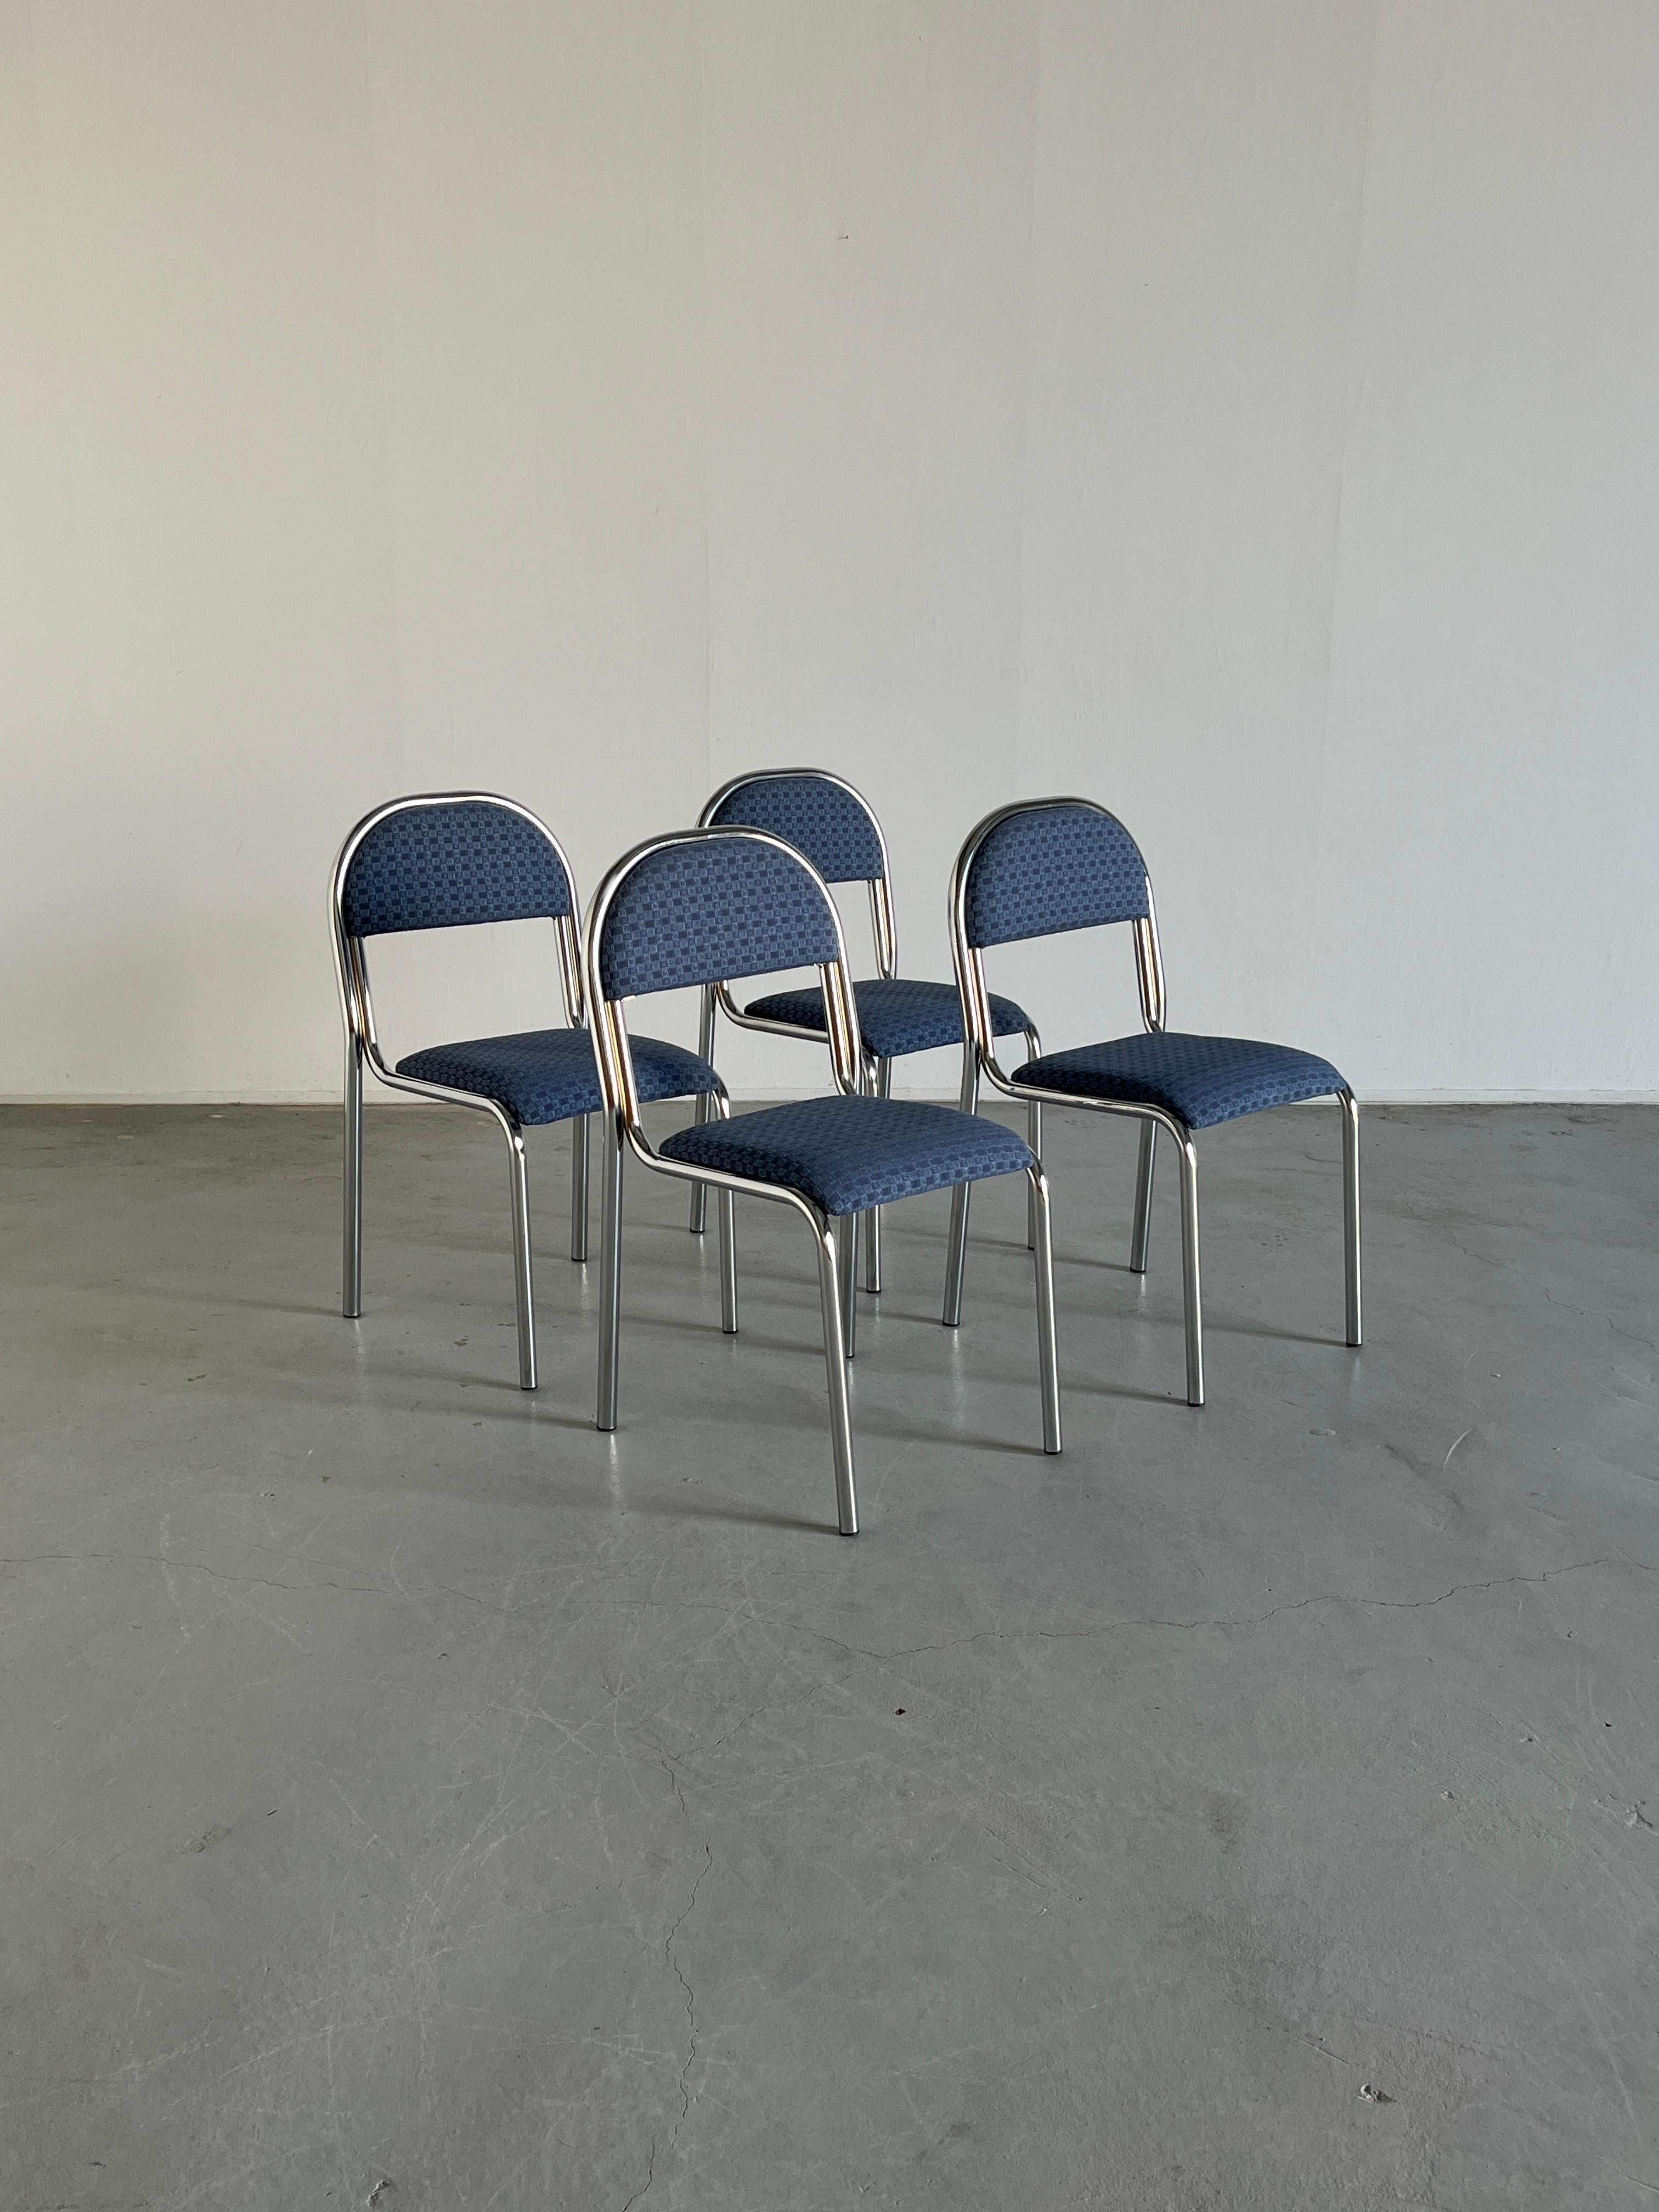 Ensemble de quatre chaises de salle à manger italiennes, fabriquées à partir d'un cadre en acier tubulaire chromé avec une structure incurvée et une assise et un dossier rembourrés.
Design/One unique, matériaux de haute qualité et fabrication